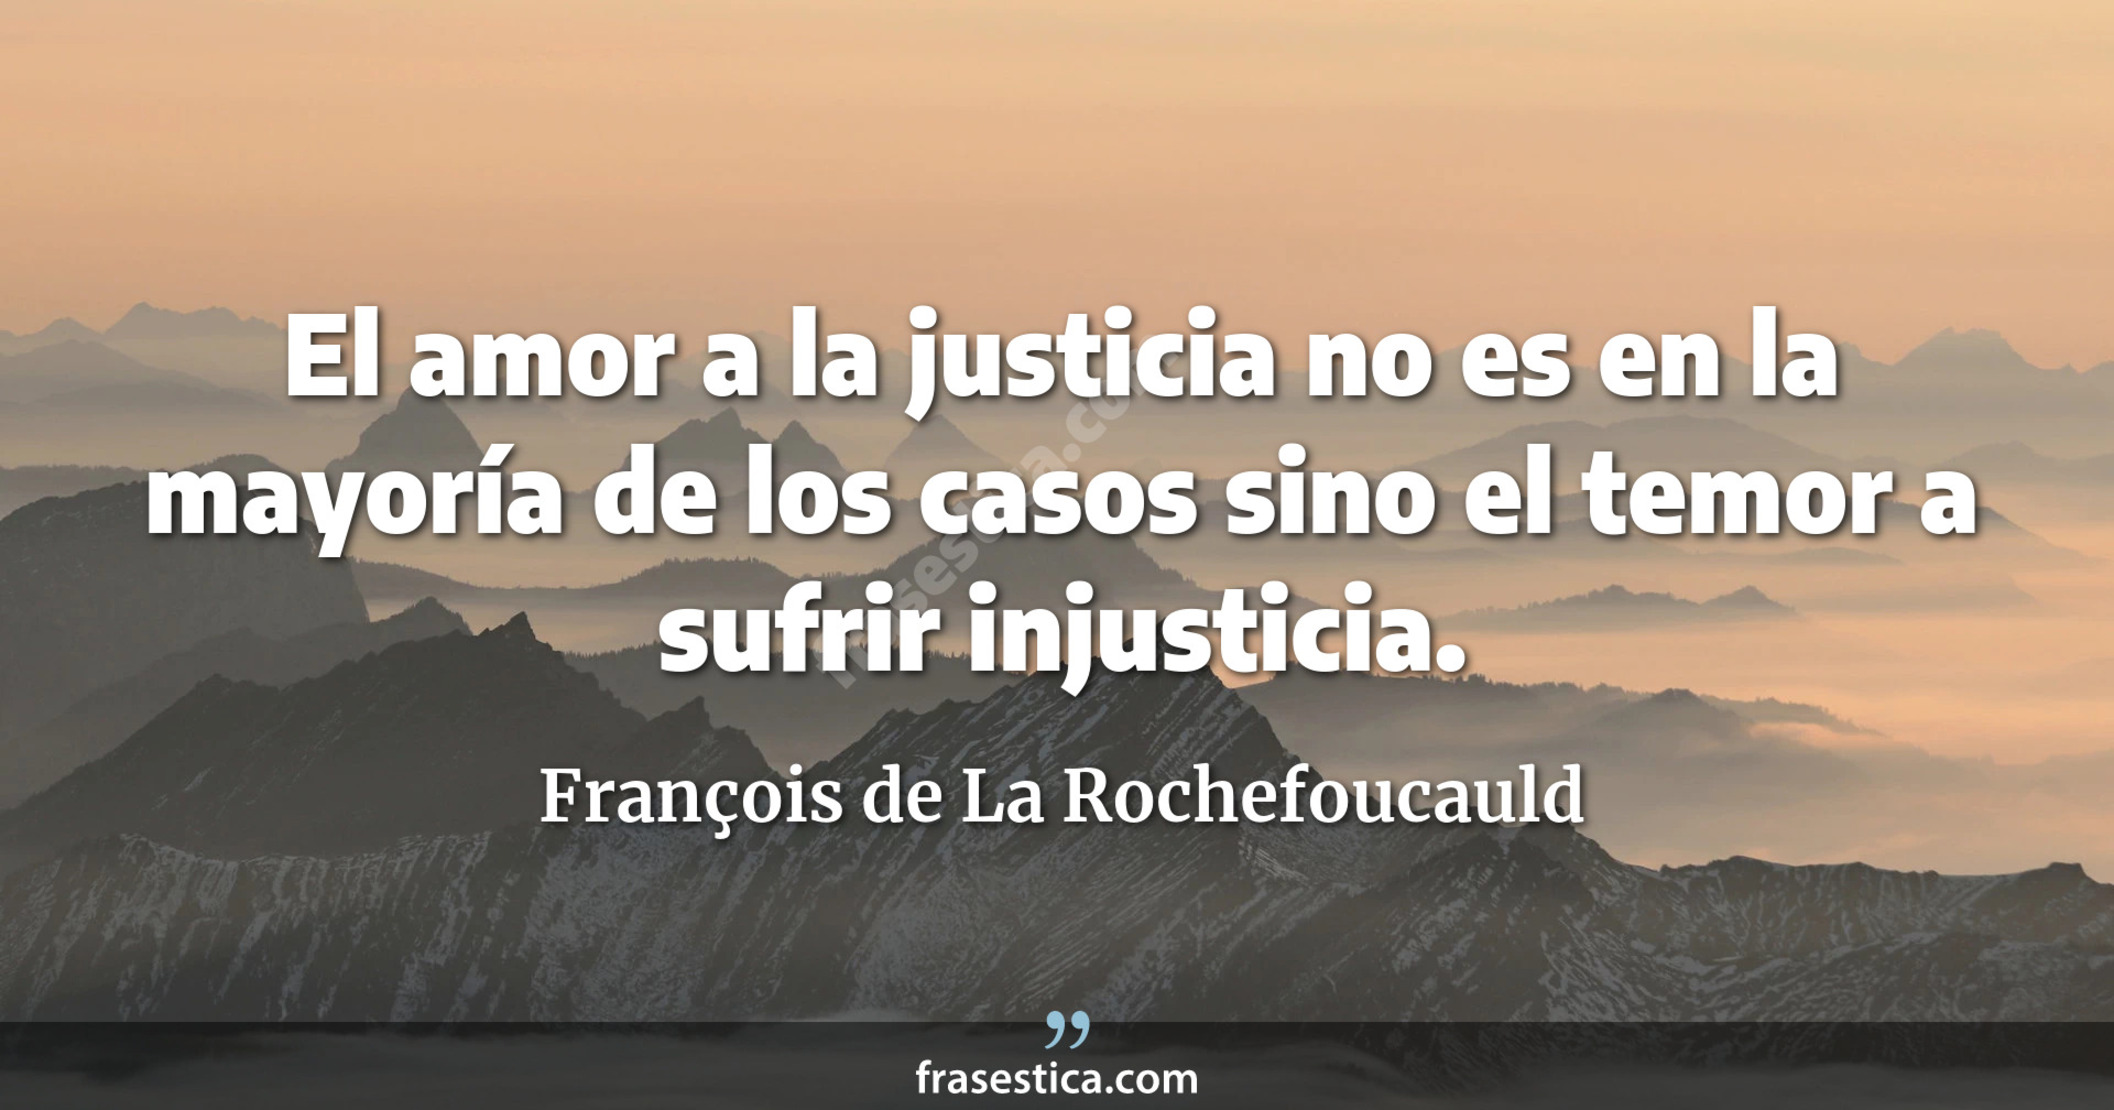 El amor a la justicia no es en la mayoría de los casos sino el temor a sufrir injusticia. - François de La Rochefoucauld